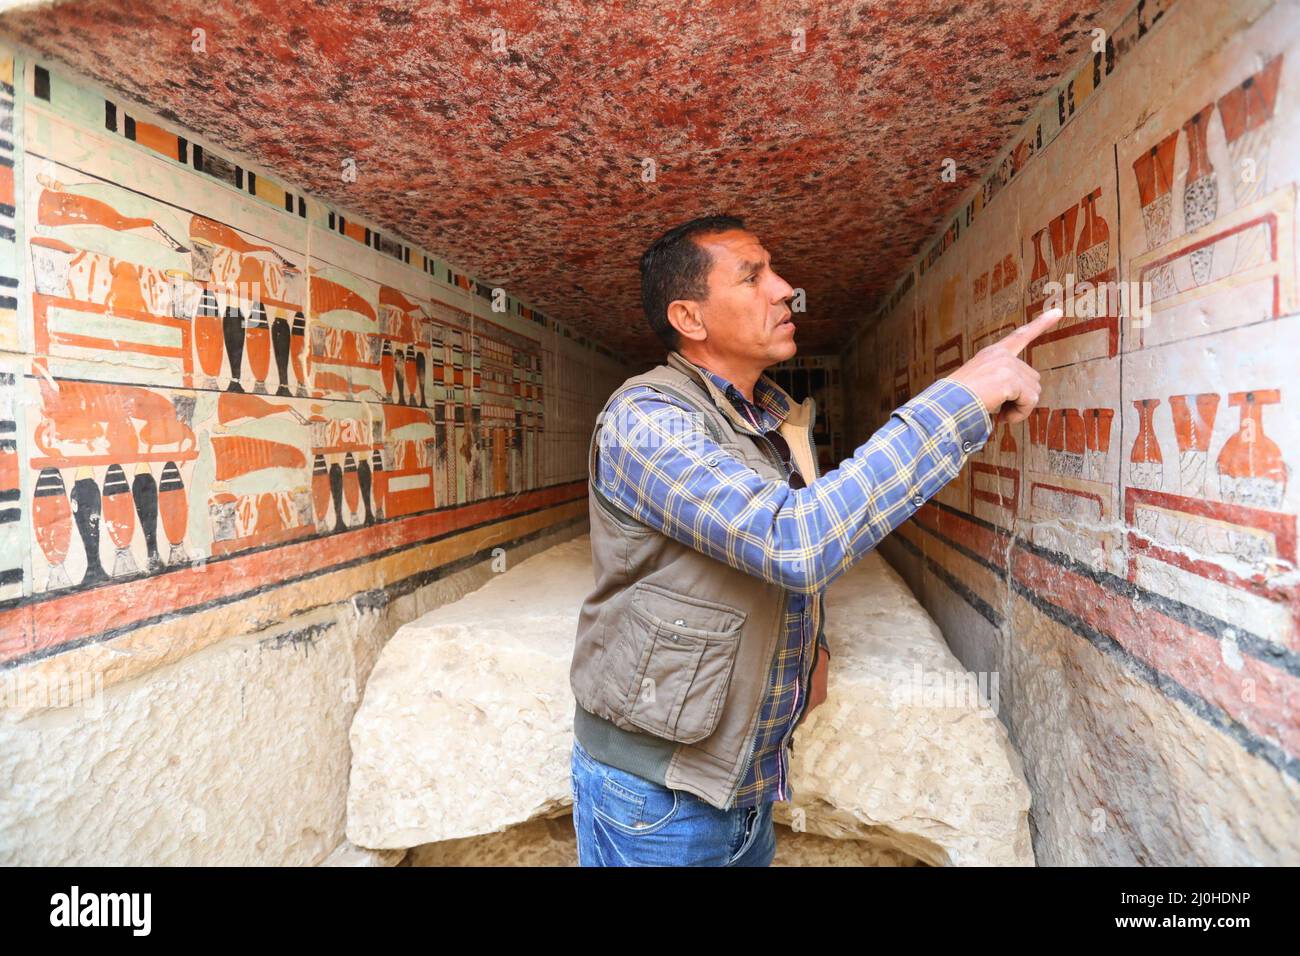 (220319) -- LE CAIRE, le 19 mars 2022 (Xinhua) -- un archéologue présente la peinture murale dans une ancienne tombe découverte sur les sites archéologiques de Saqqara, au sud-ouest du Caire, en Égypte, le 19 mars 2022. Le ministère égyptien du Tourisme et des Antiquités a annoncé jeudi la découverte de cinq tombes anciennes de 4 000 ans dans les sites archéologiques de Saqqara, au sud-ouest du Caire. Les tombes contiennent des découvertes et des objets datant de la fin de l'ancien Royaume s'étendant de 2686 BC à 2181 BC et le début de la première période intermédiaire s'étendant de 2181 BC à 2055 BC. ALLER AVEC 'Egypt dis Banque D'Images